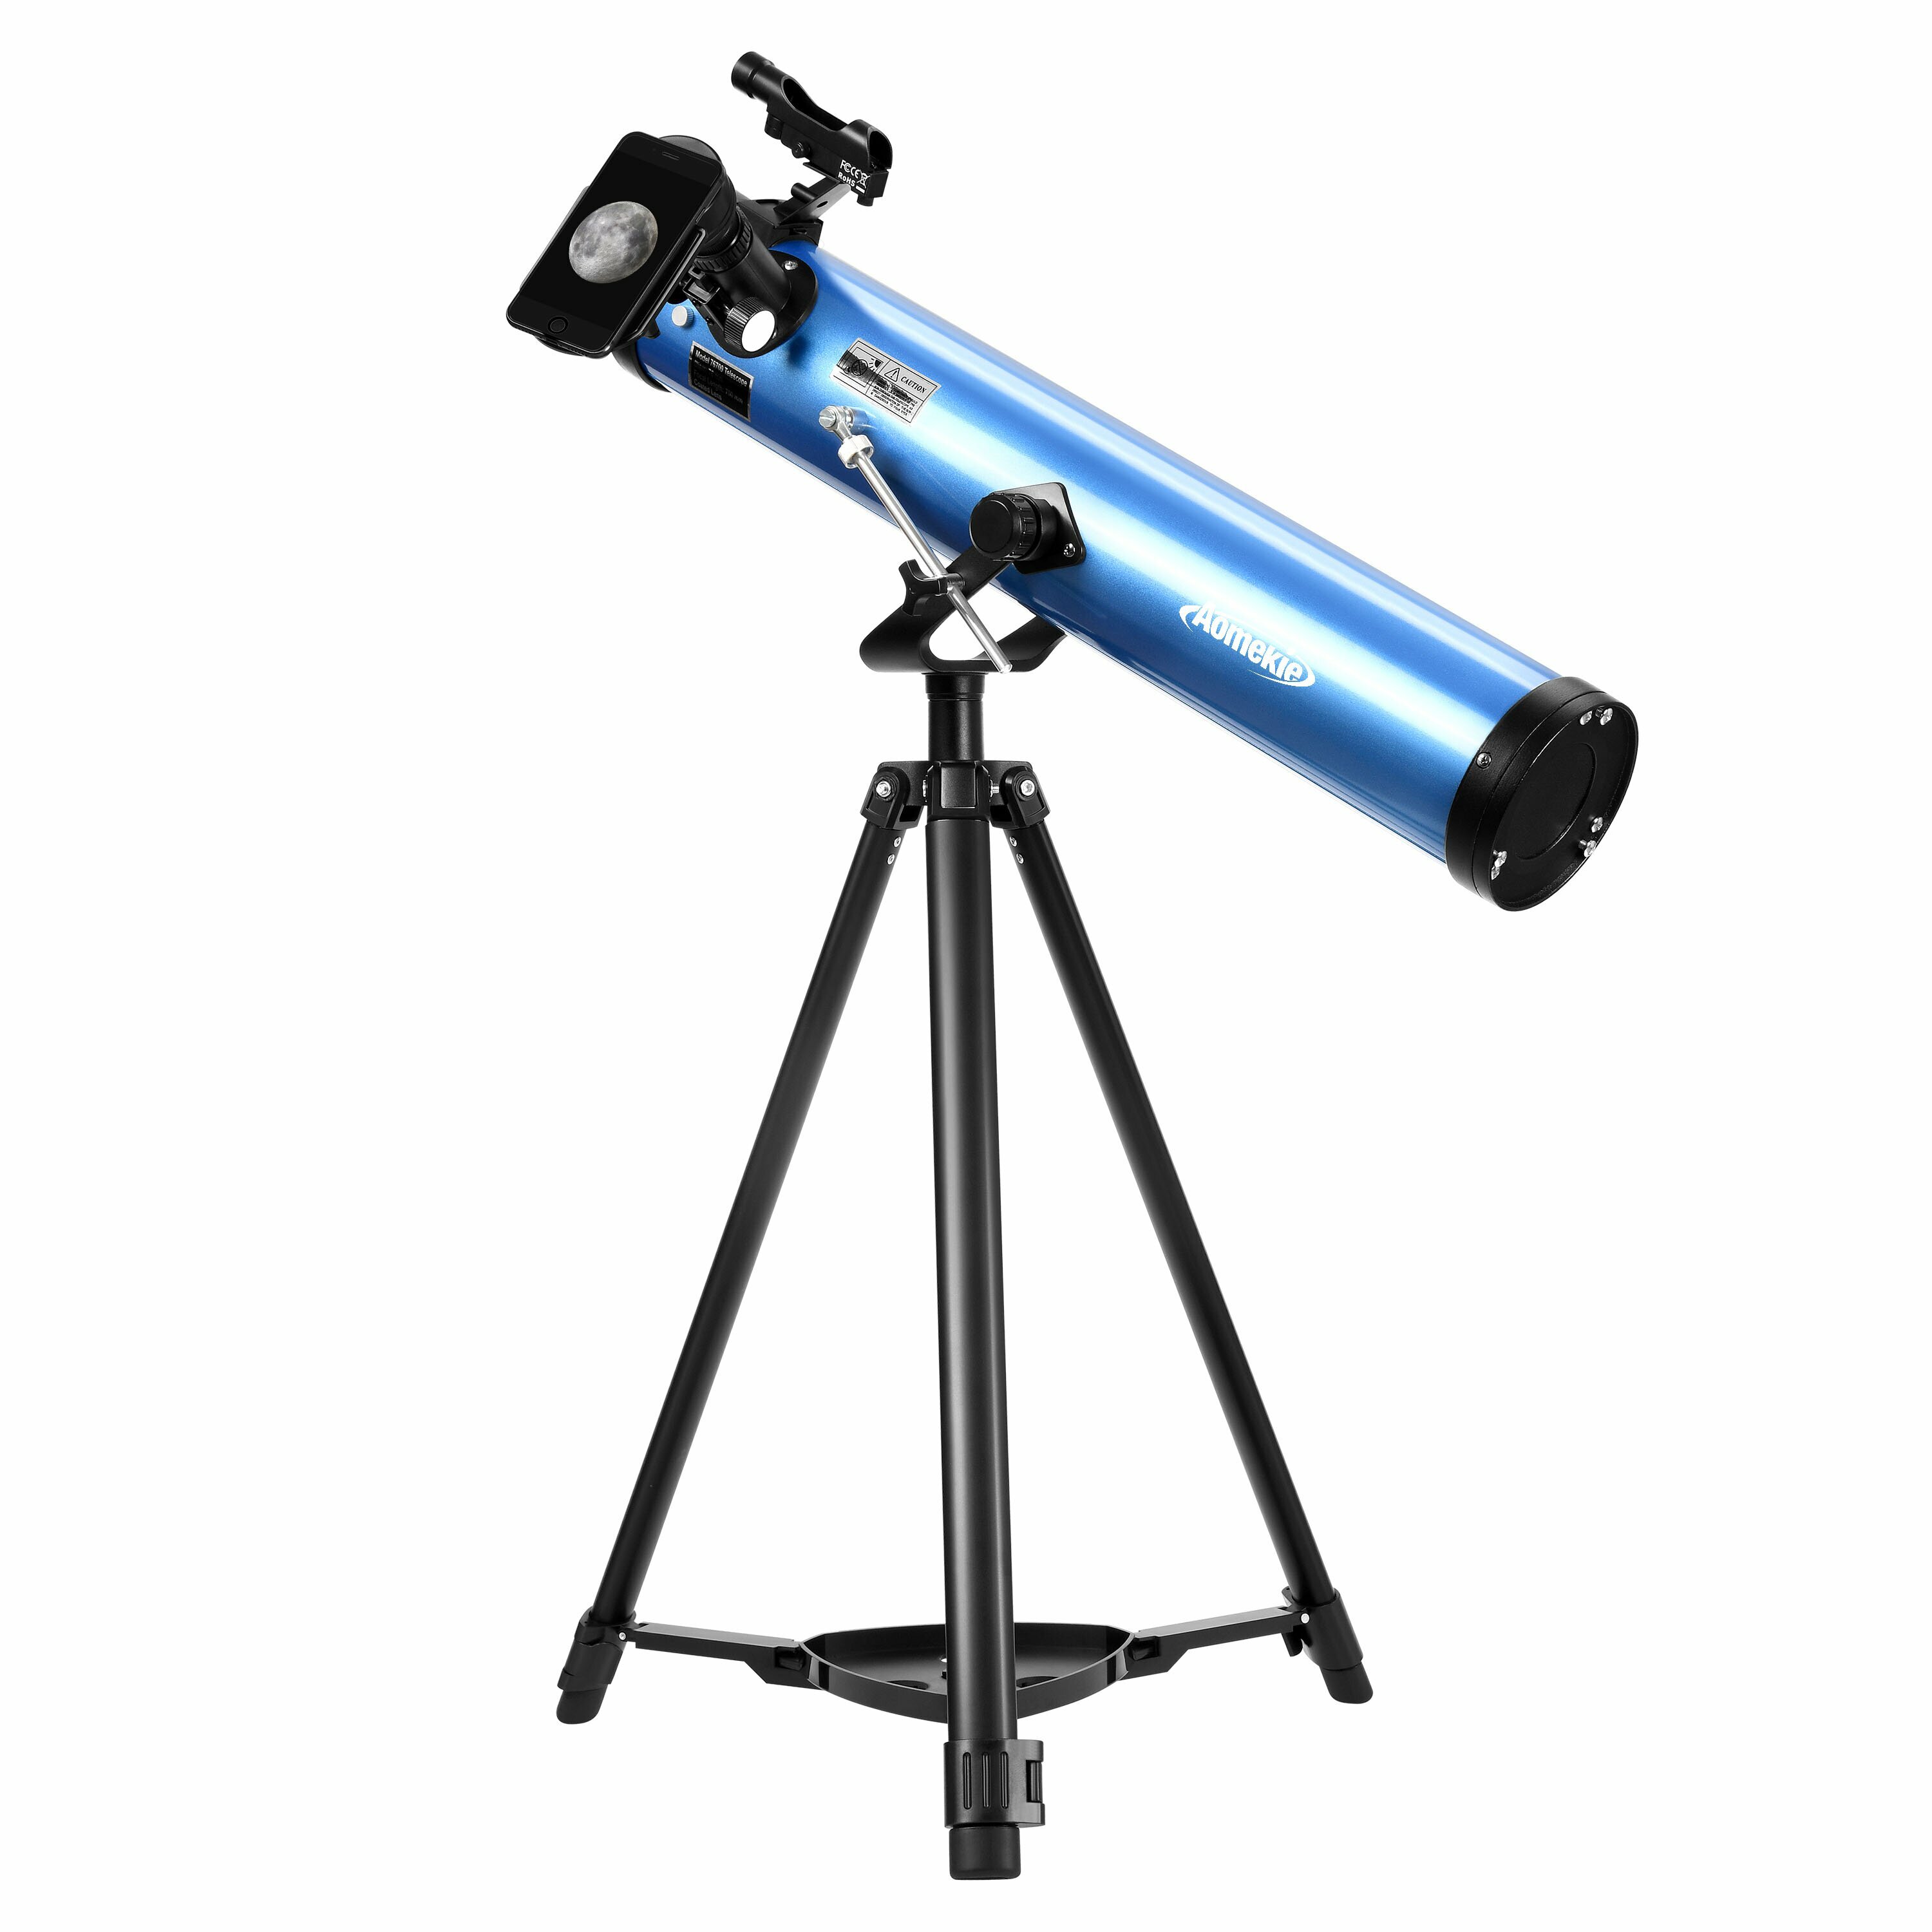 [EU Direct] AOMEKIE Telescópios refletores para adultos iniciantes em astronomia 76mm/700mm com adaptador para telefone, controlador Bluetooth, tripé, buscador e filtro lunar A02018